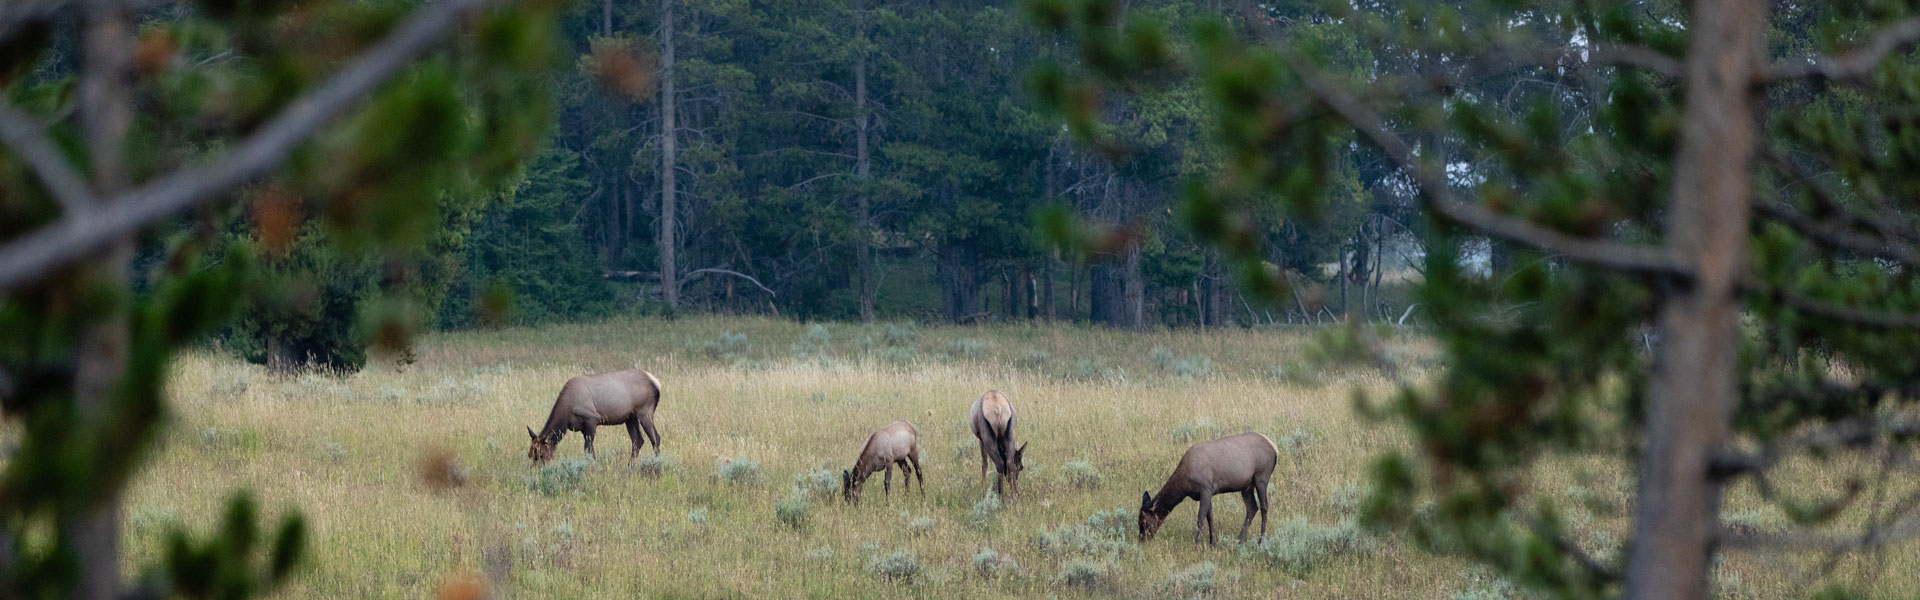 Cow elk in field